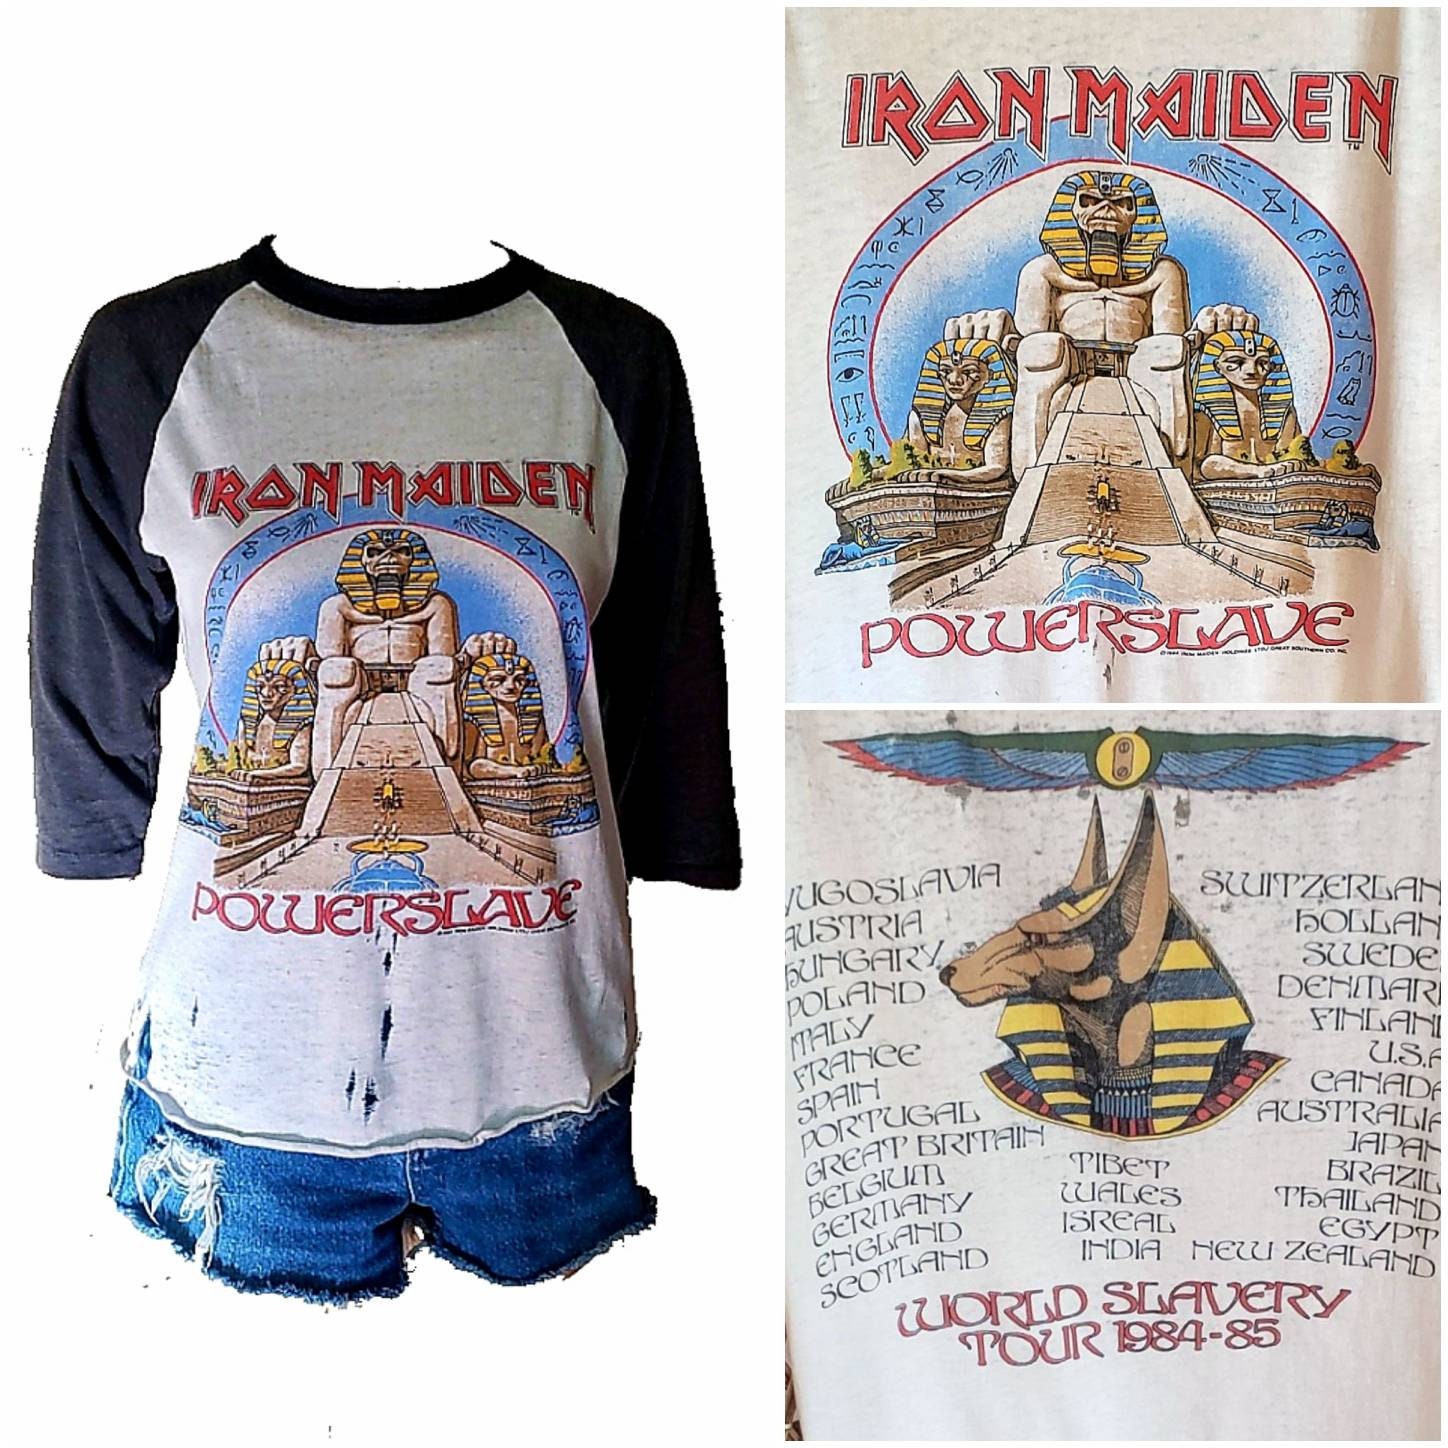 Vintage Iron Maiden Shirt / 84-85 Powerslave Tour / 80s Iron